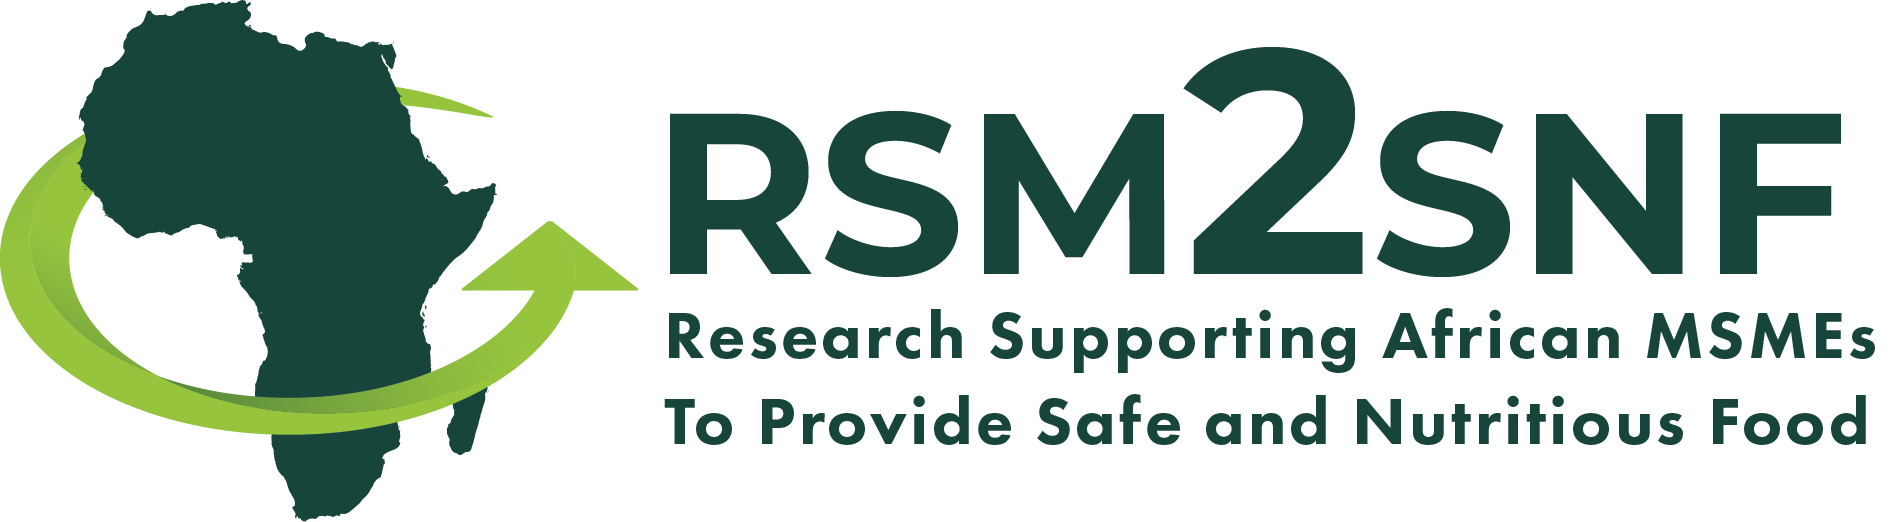 RSM2SNF logo medium